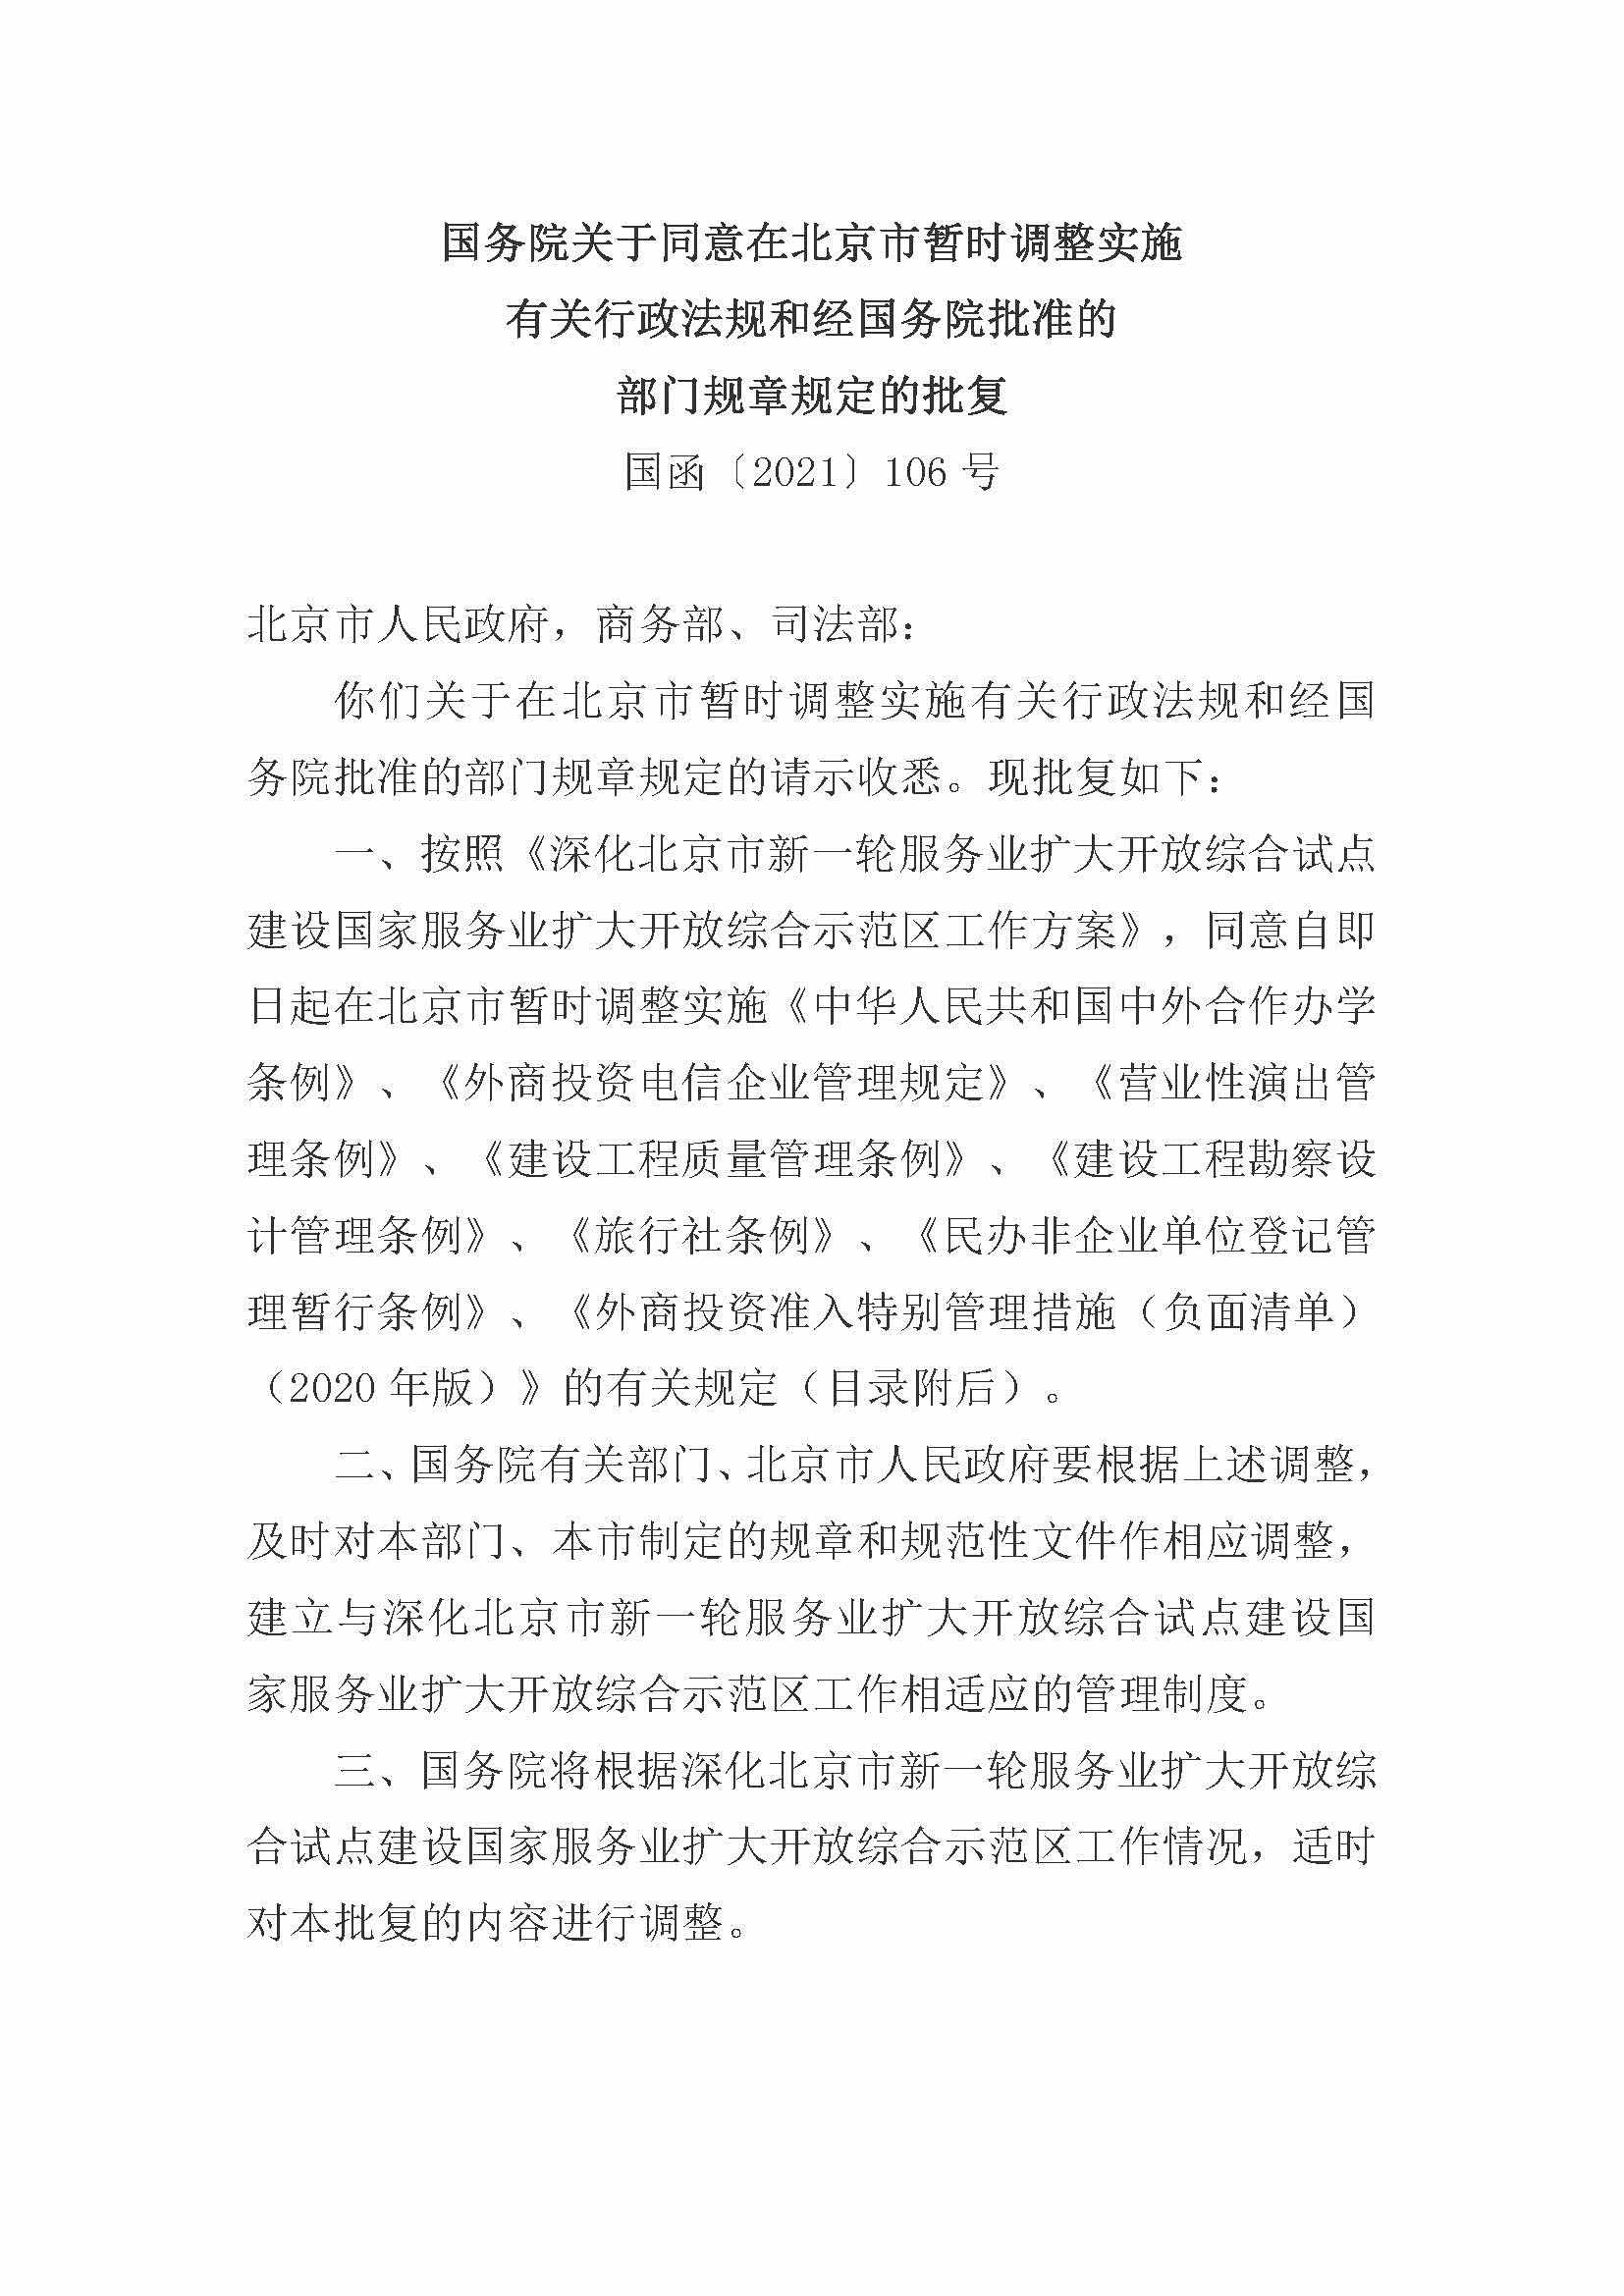 国函[2021]106号：国务院关于同意在北京市暂时调整实施有关行政法规和经国务院批准的部门规章规定的批复